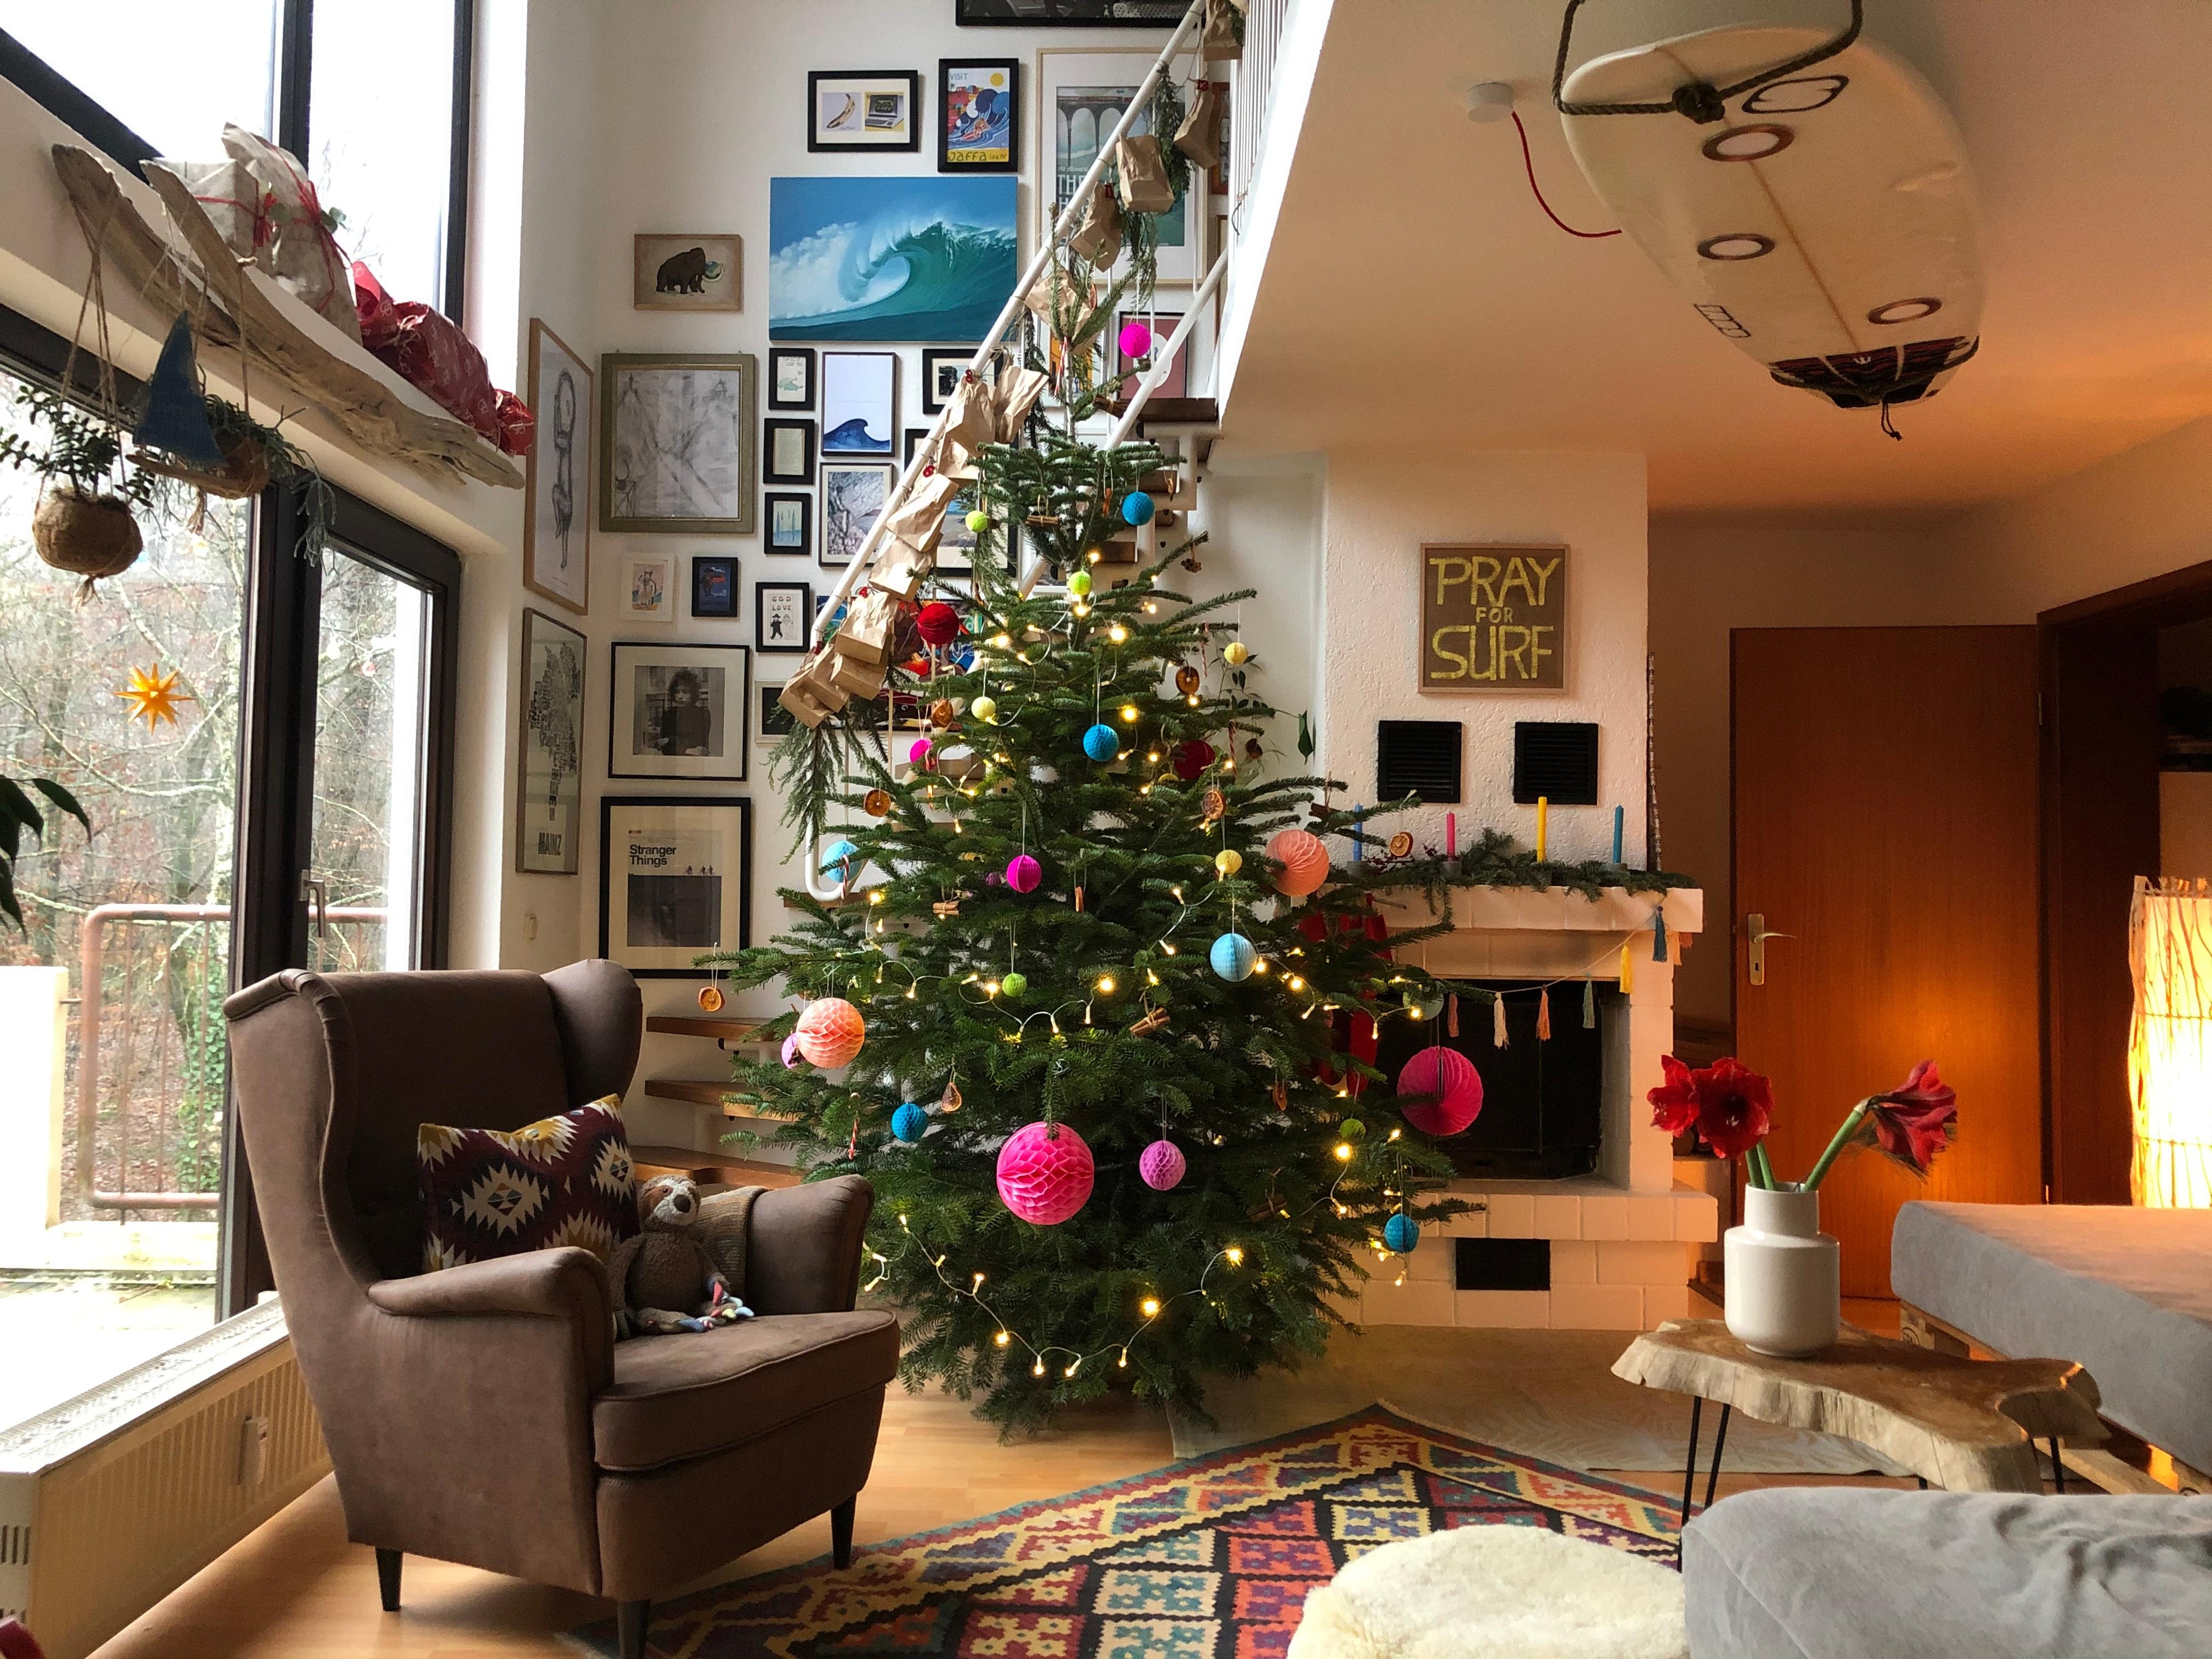 #froheweihnachten euch allen! Der #weihnachtsbaum steht und das #wohnzimmer erstrahlt #boho #bunt